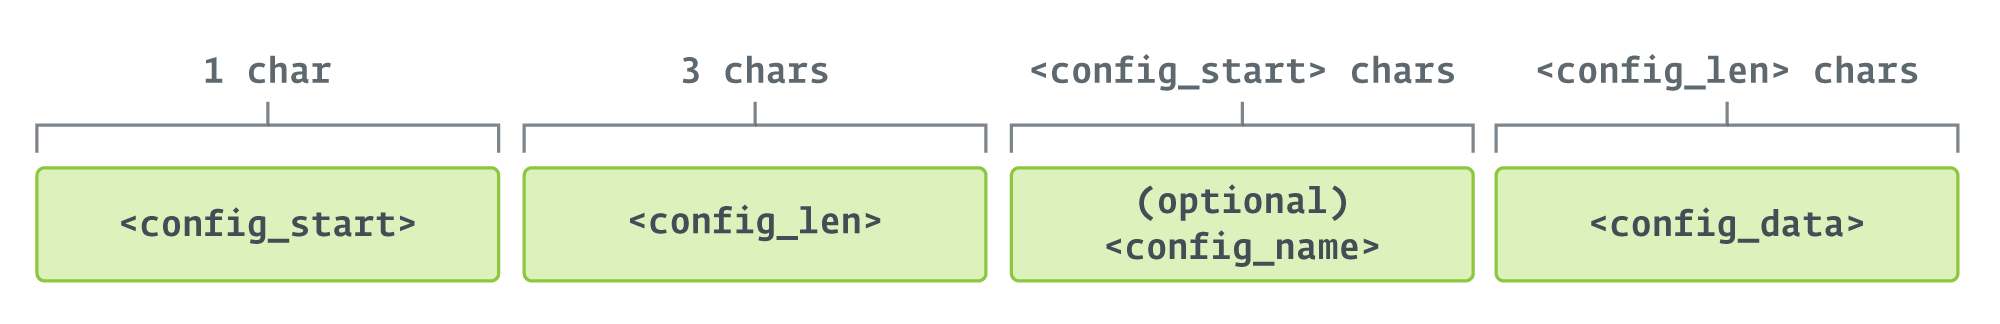 Figur 3. Format af konfigurationsfelter i config.txt